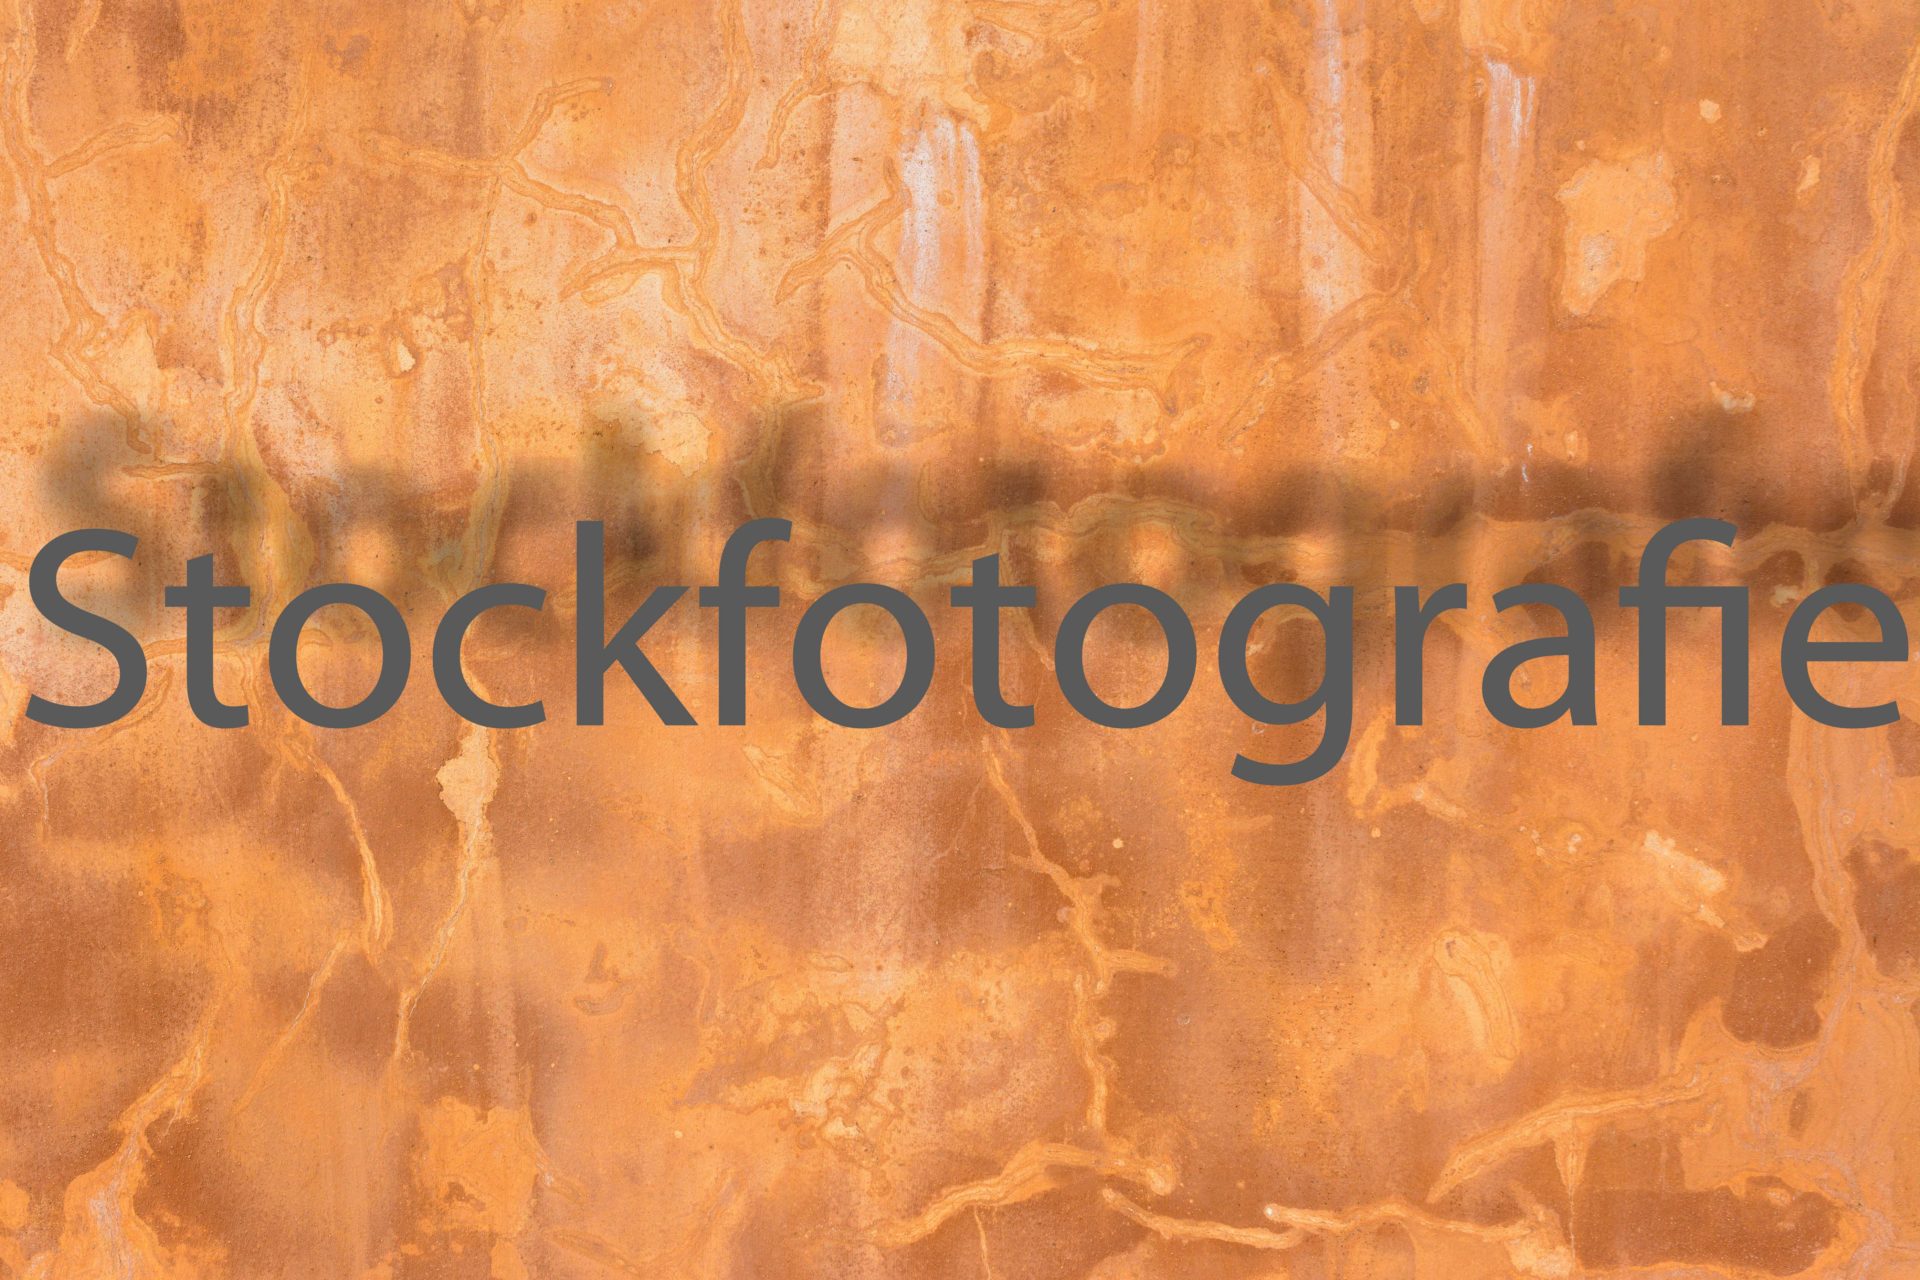 Stockfotografie für Anfänger, Teil 5 Marketing & Recht.